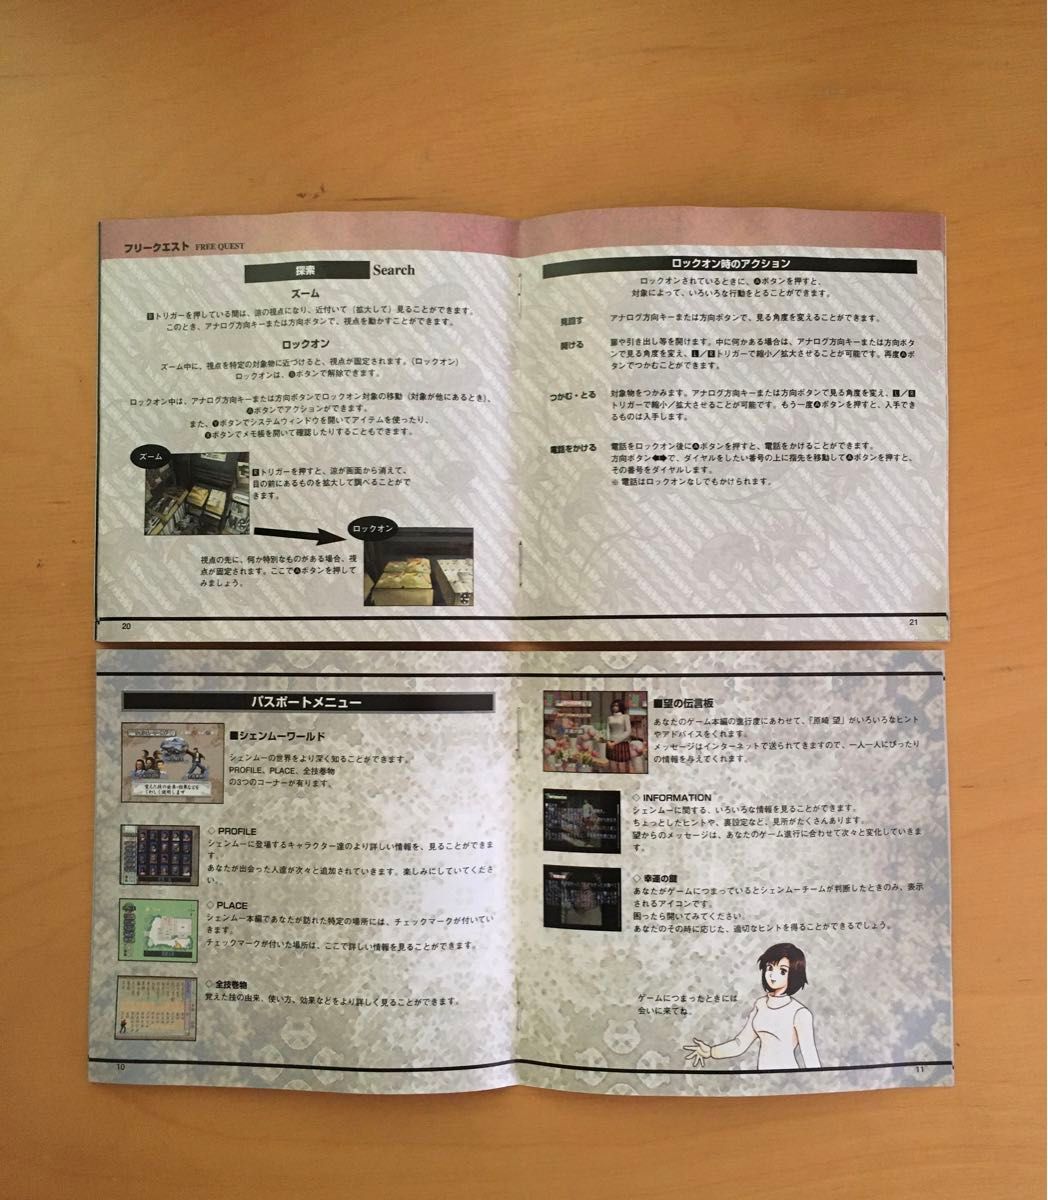 シェンムー 一章 横須賀 ドリームキャスト専用ソフト セガ・エンタープライズ HDR-0031 Dreamcast SEGA 